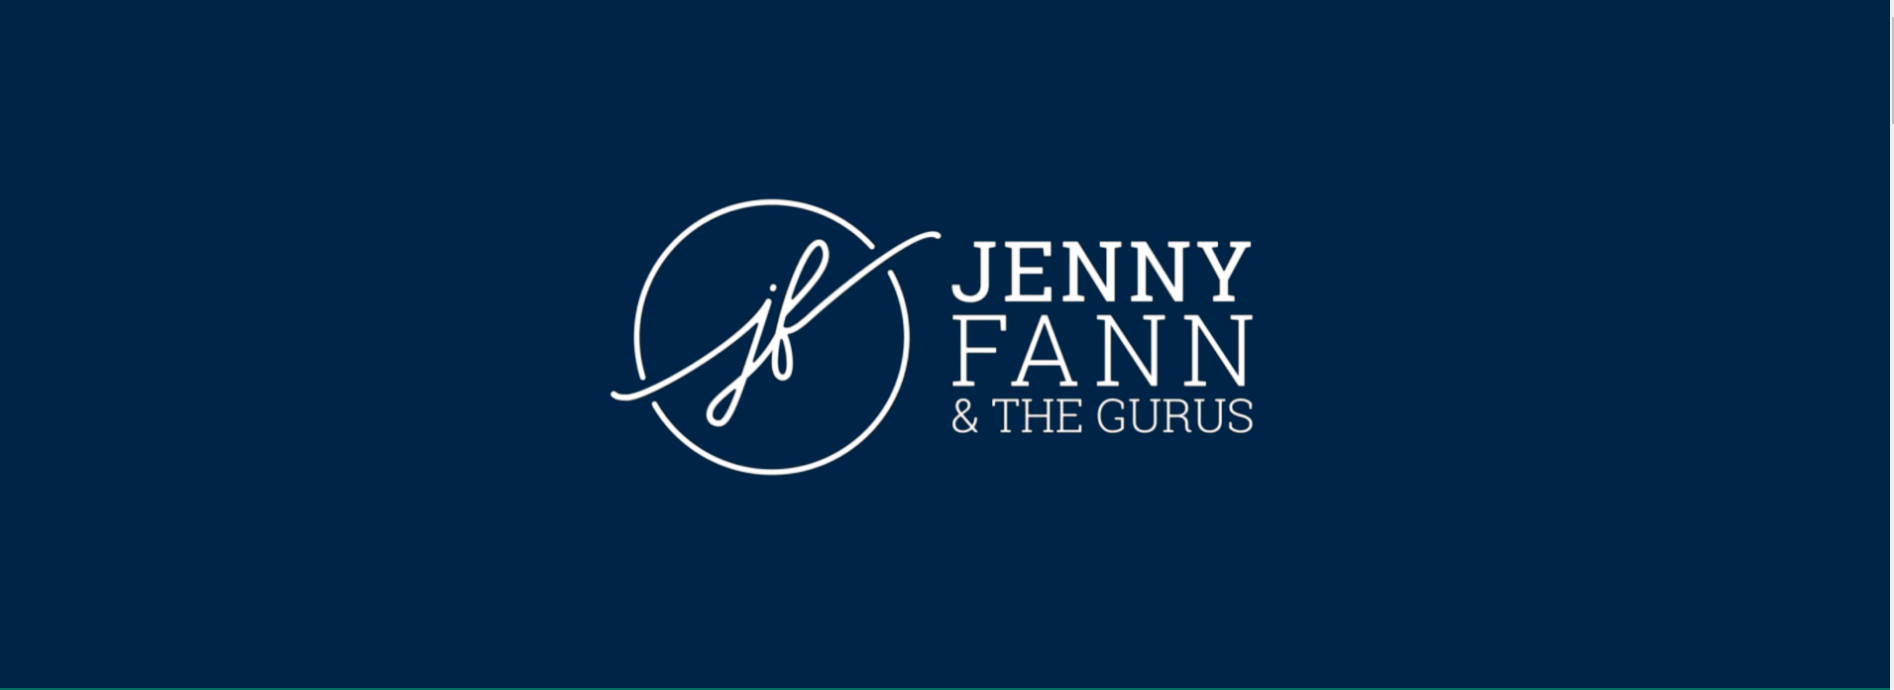 jenny fann and the gurus logo